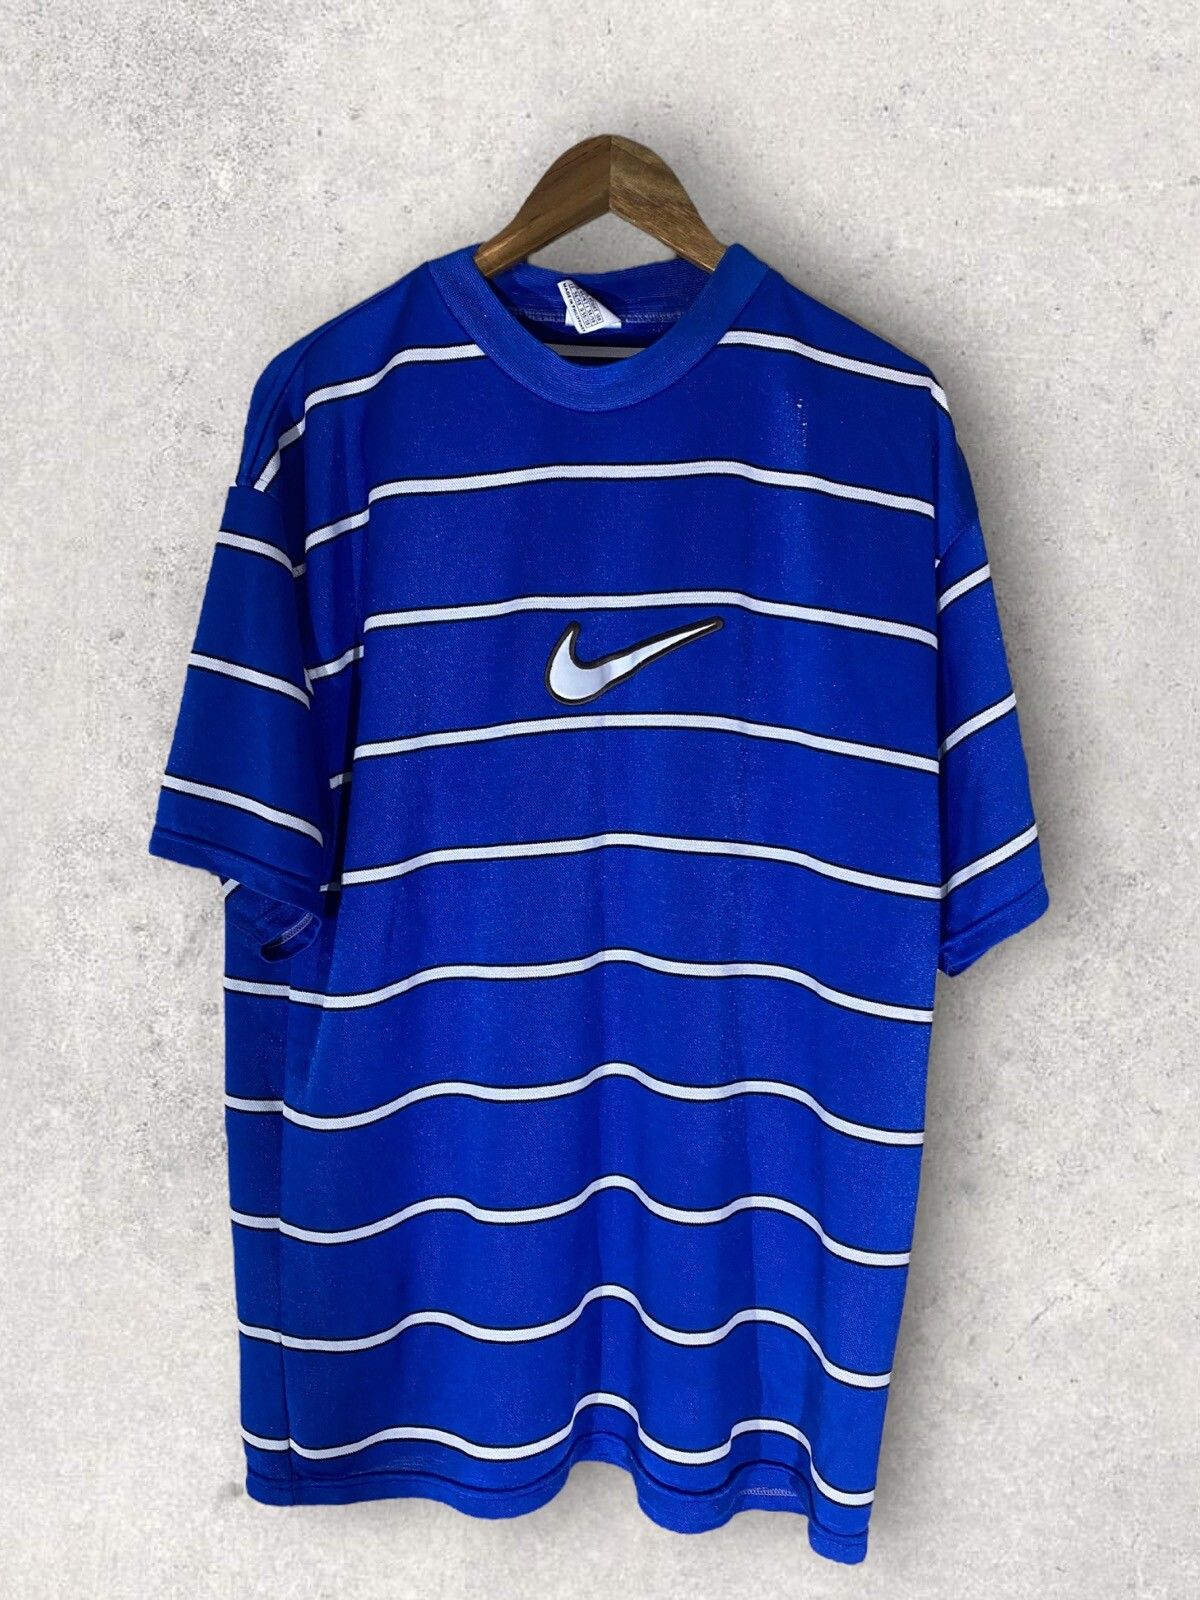 Nike Vintage Nike Striped Center Swoosh T-Shirt Size US XL / EU 56 / 4 - 1 Preview